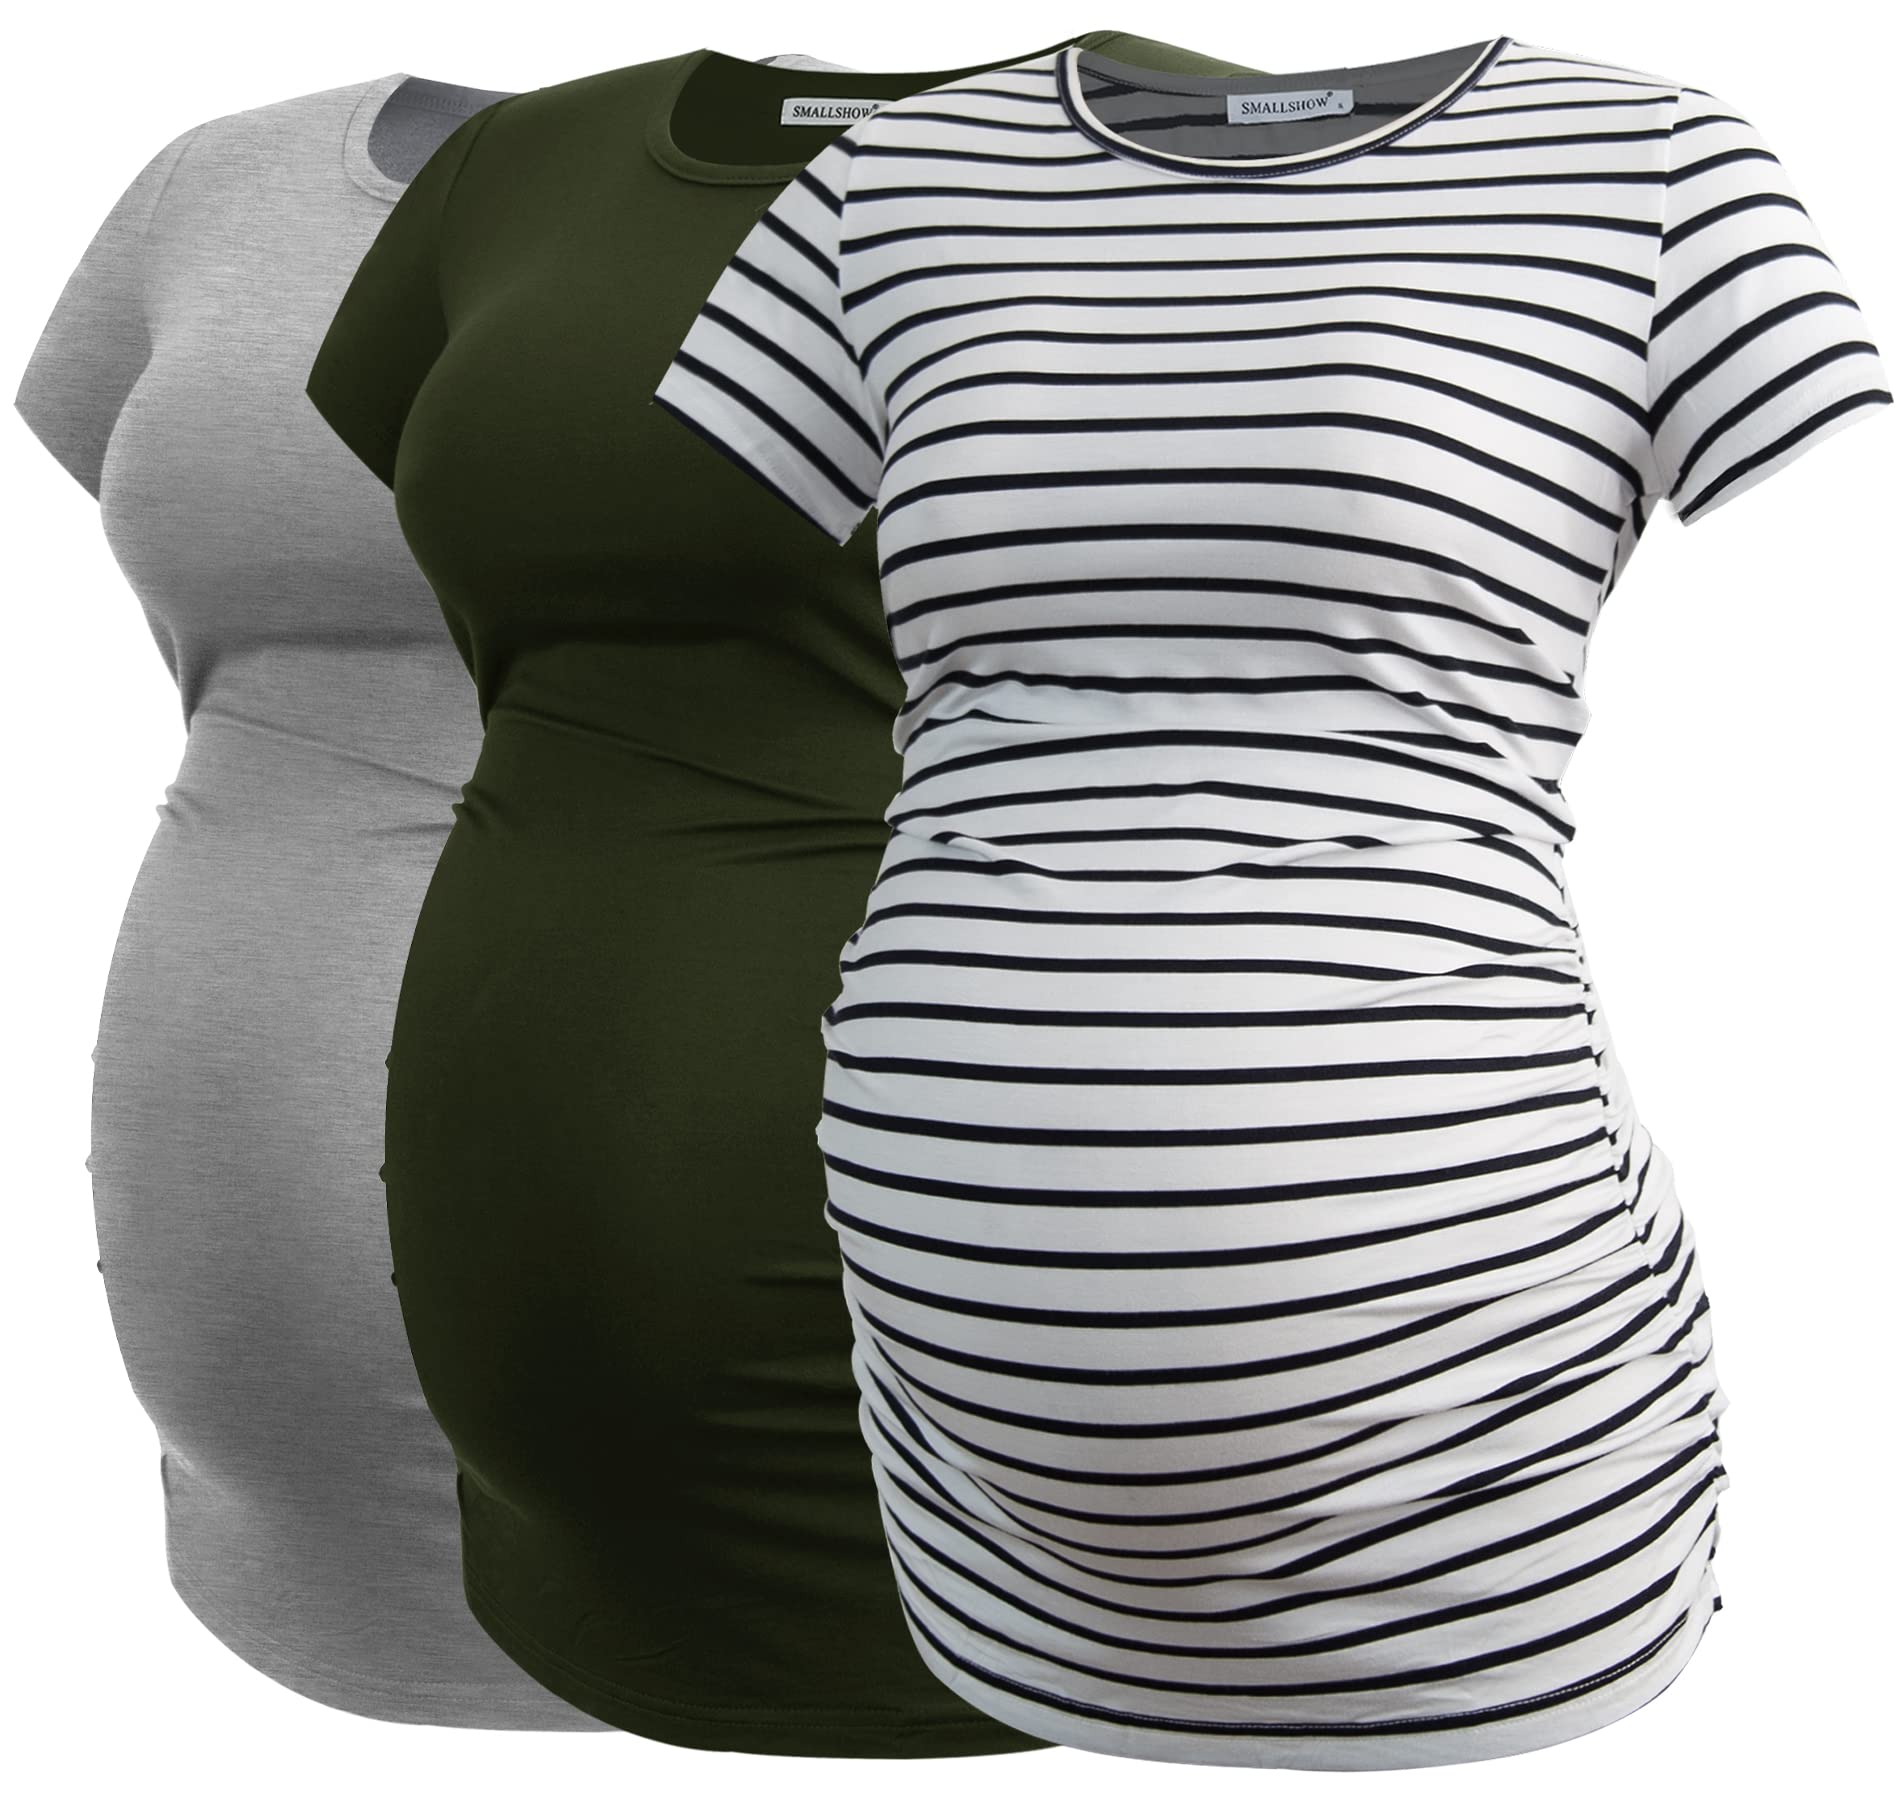 Smallshow Damen Umstandsmode Tops Seitlich Geraffte Schwangerschafts Umstandstop 3er Pack Army Green-Light Grey-White Stripe X-Large